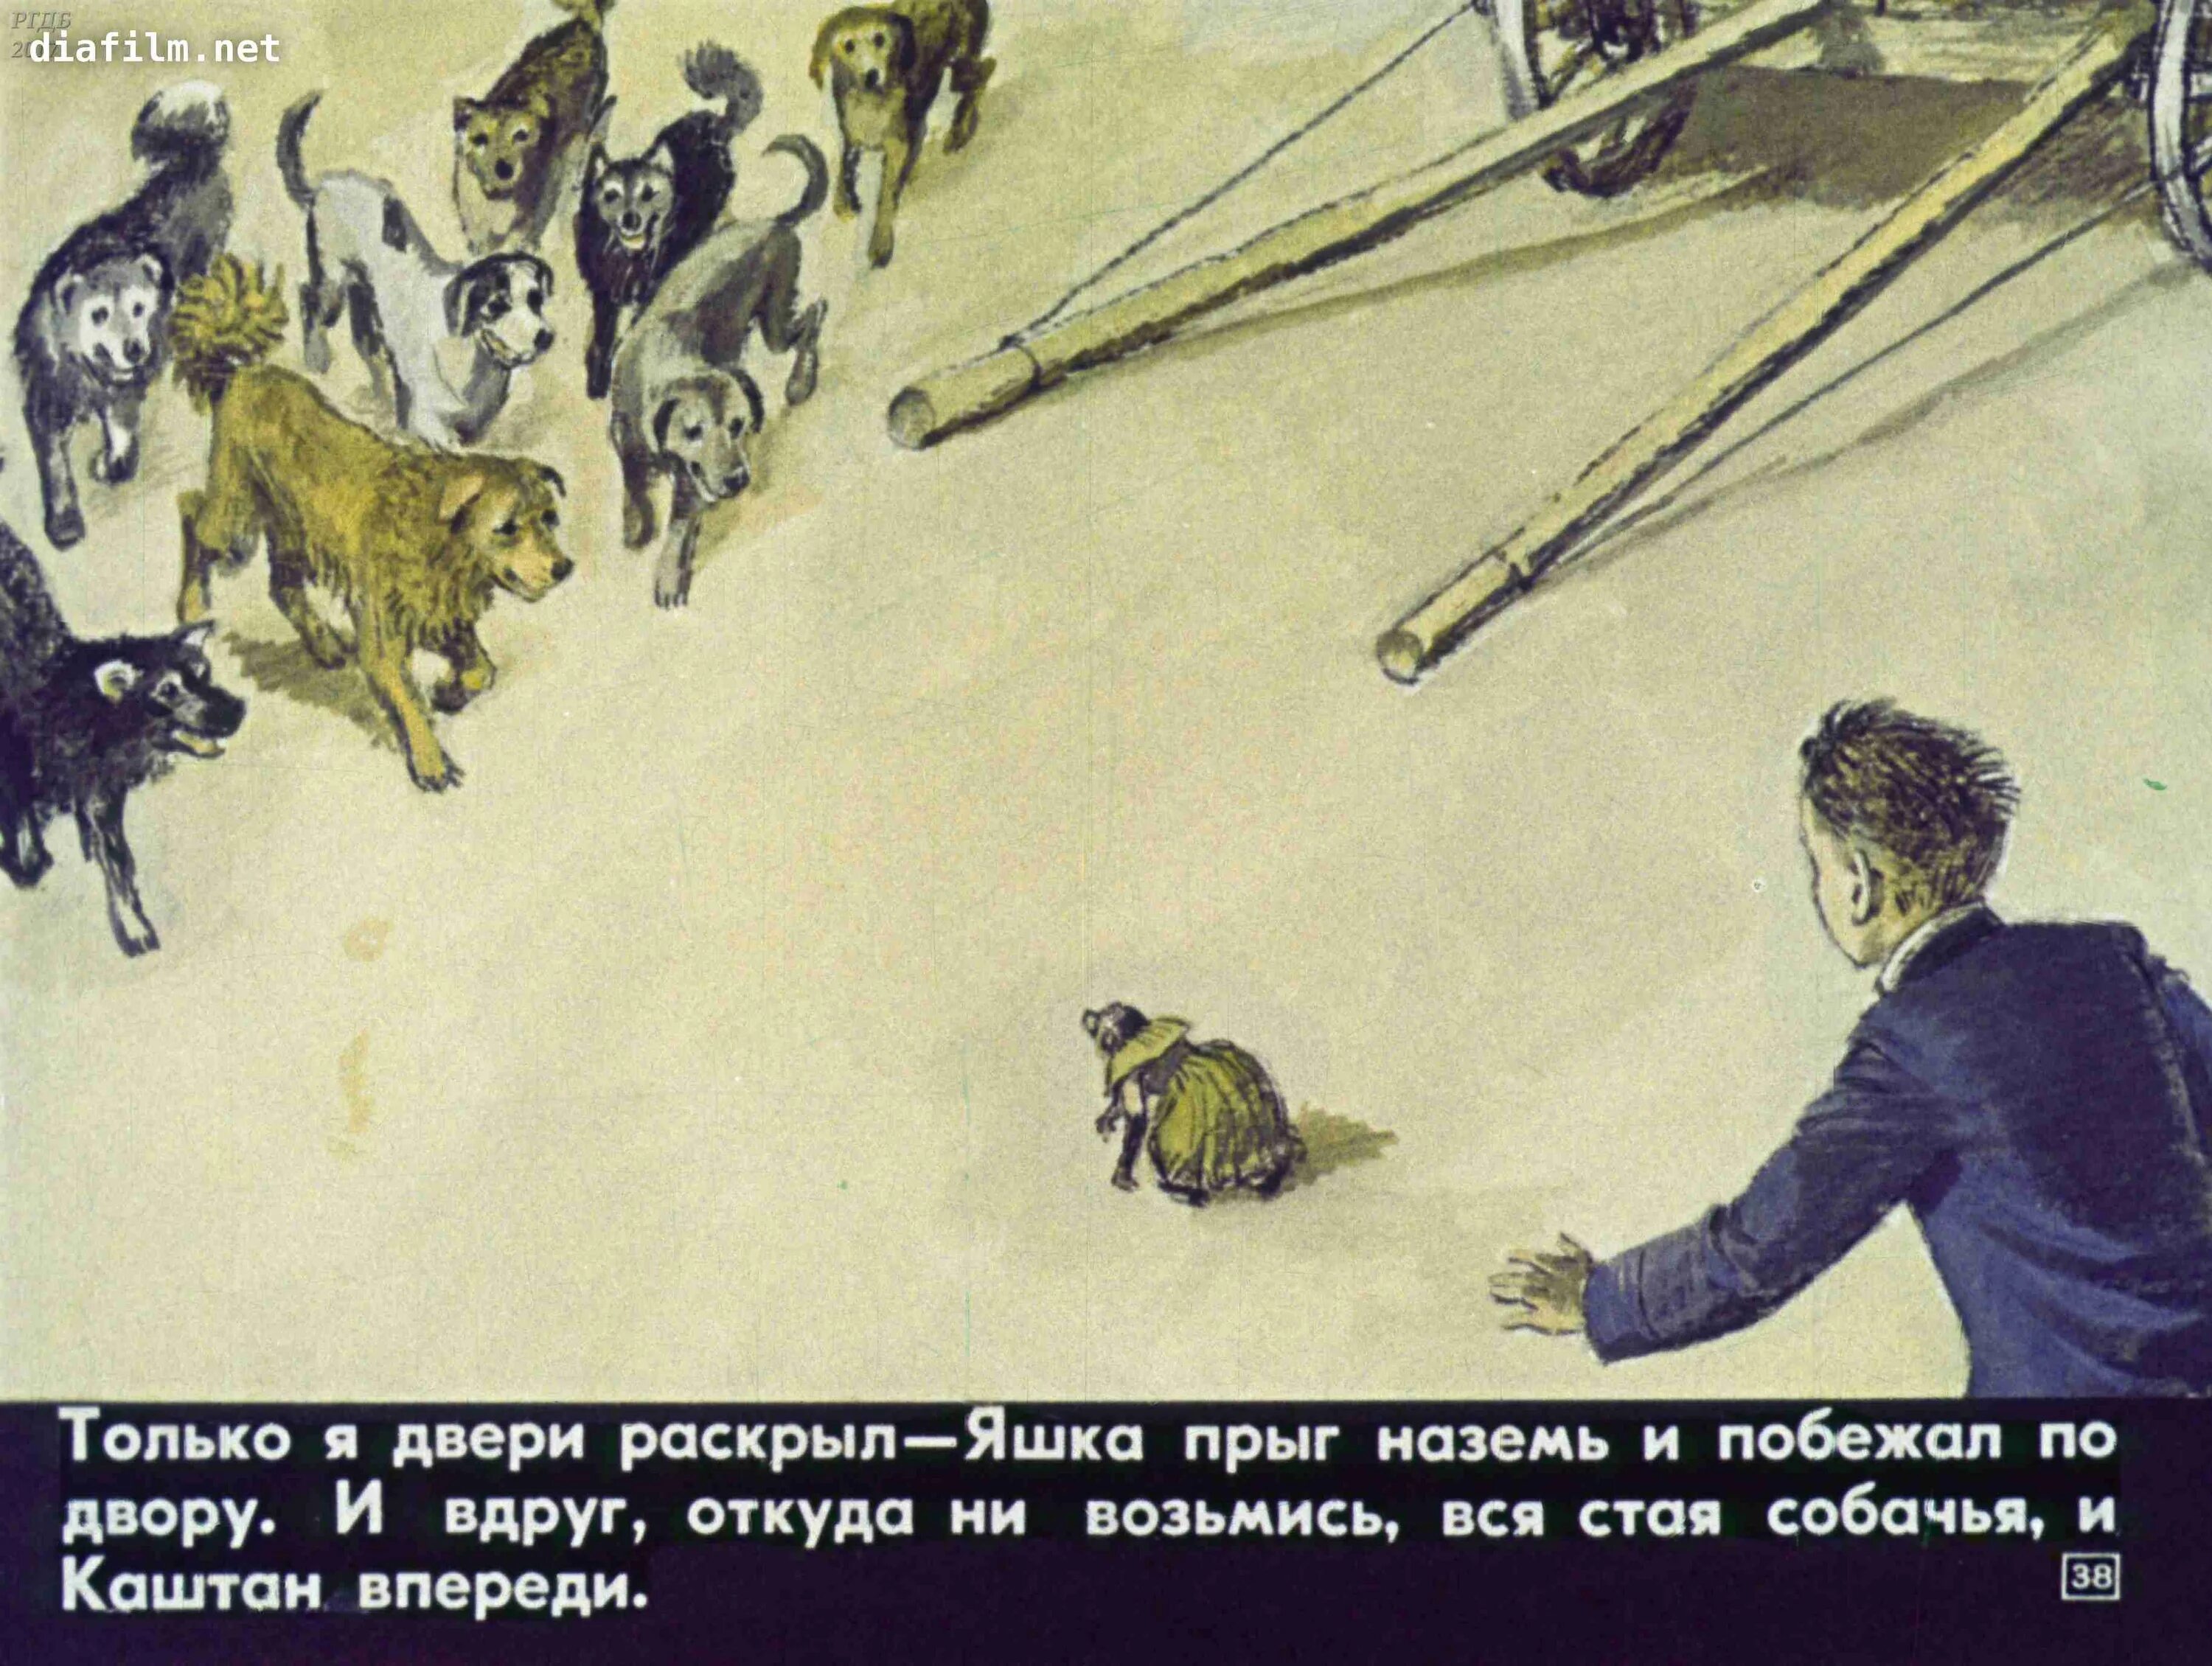 Иллюстрация к рассказу Бориса Житкова про обезьянку.